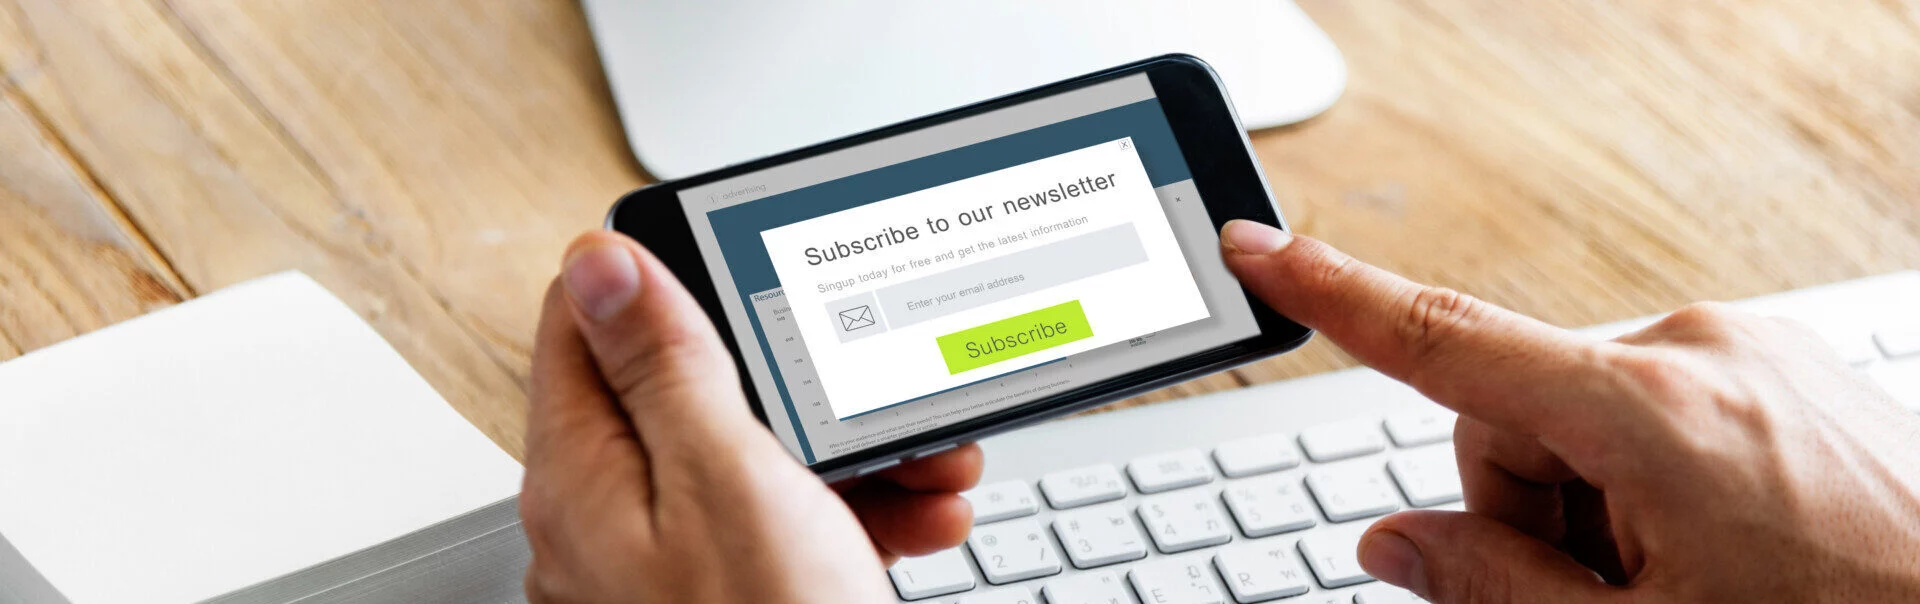 Subscribe Newsletter Advertising Register Member Concept 2